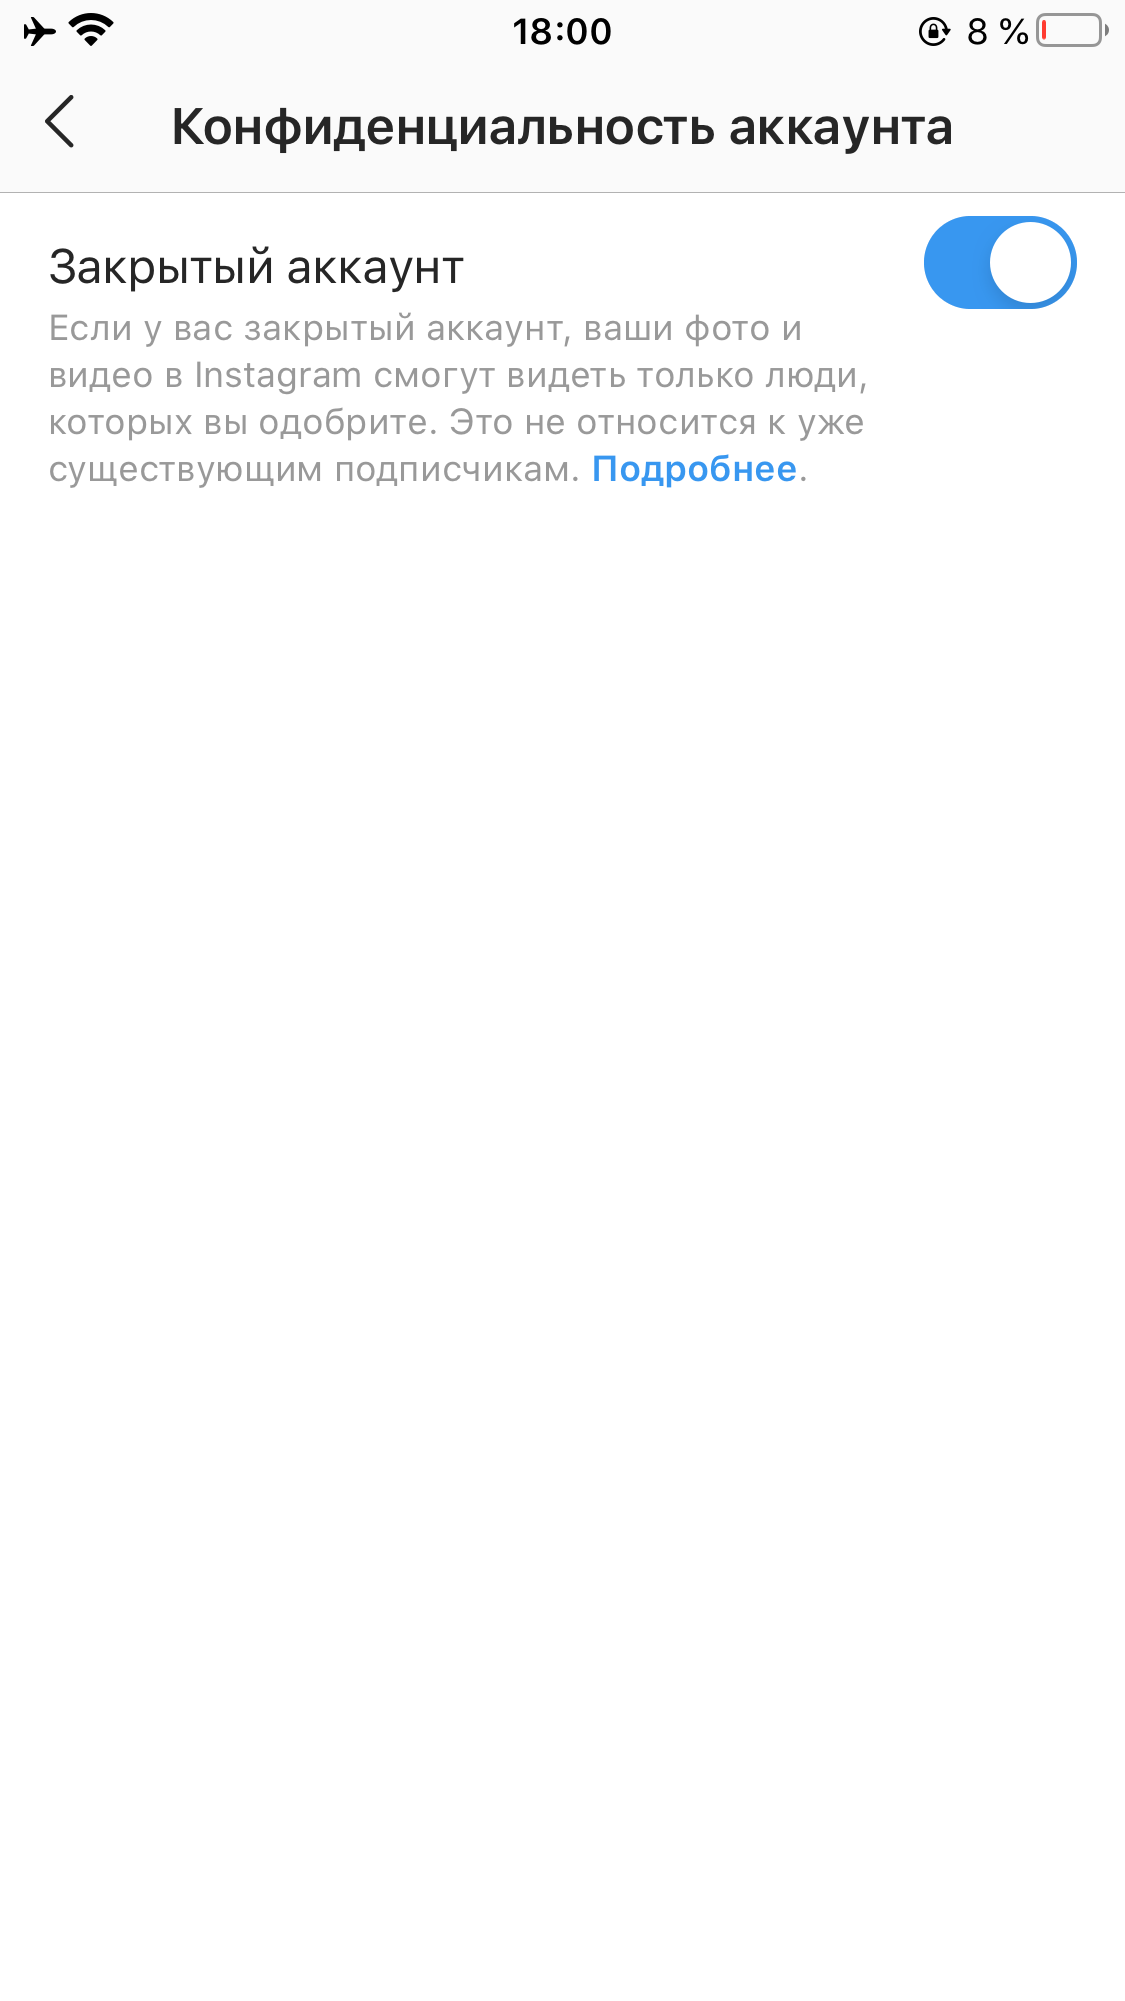 Открыть аккаунт в Инстаграм* с телефона через браузер